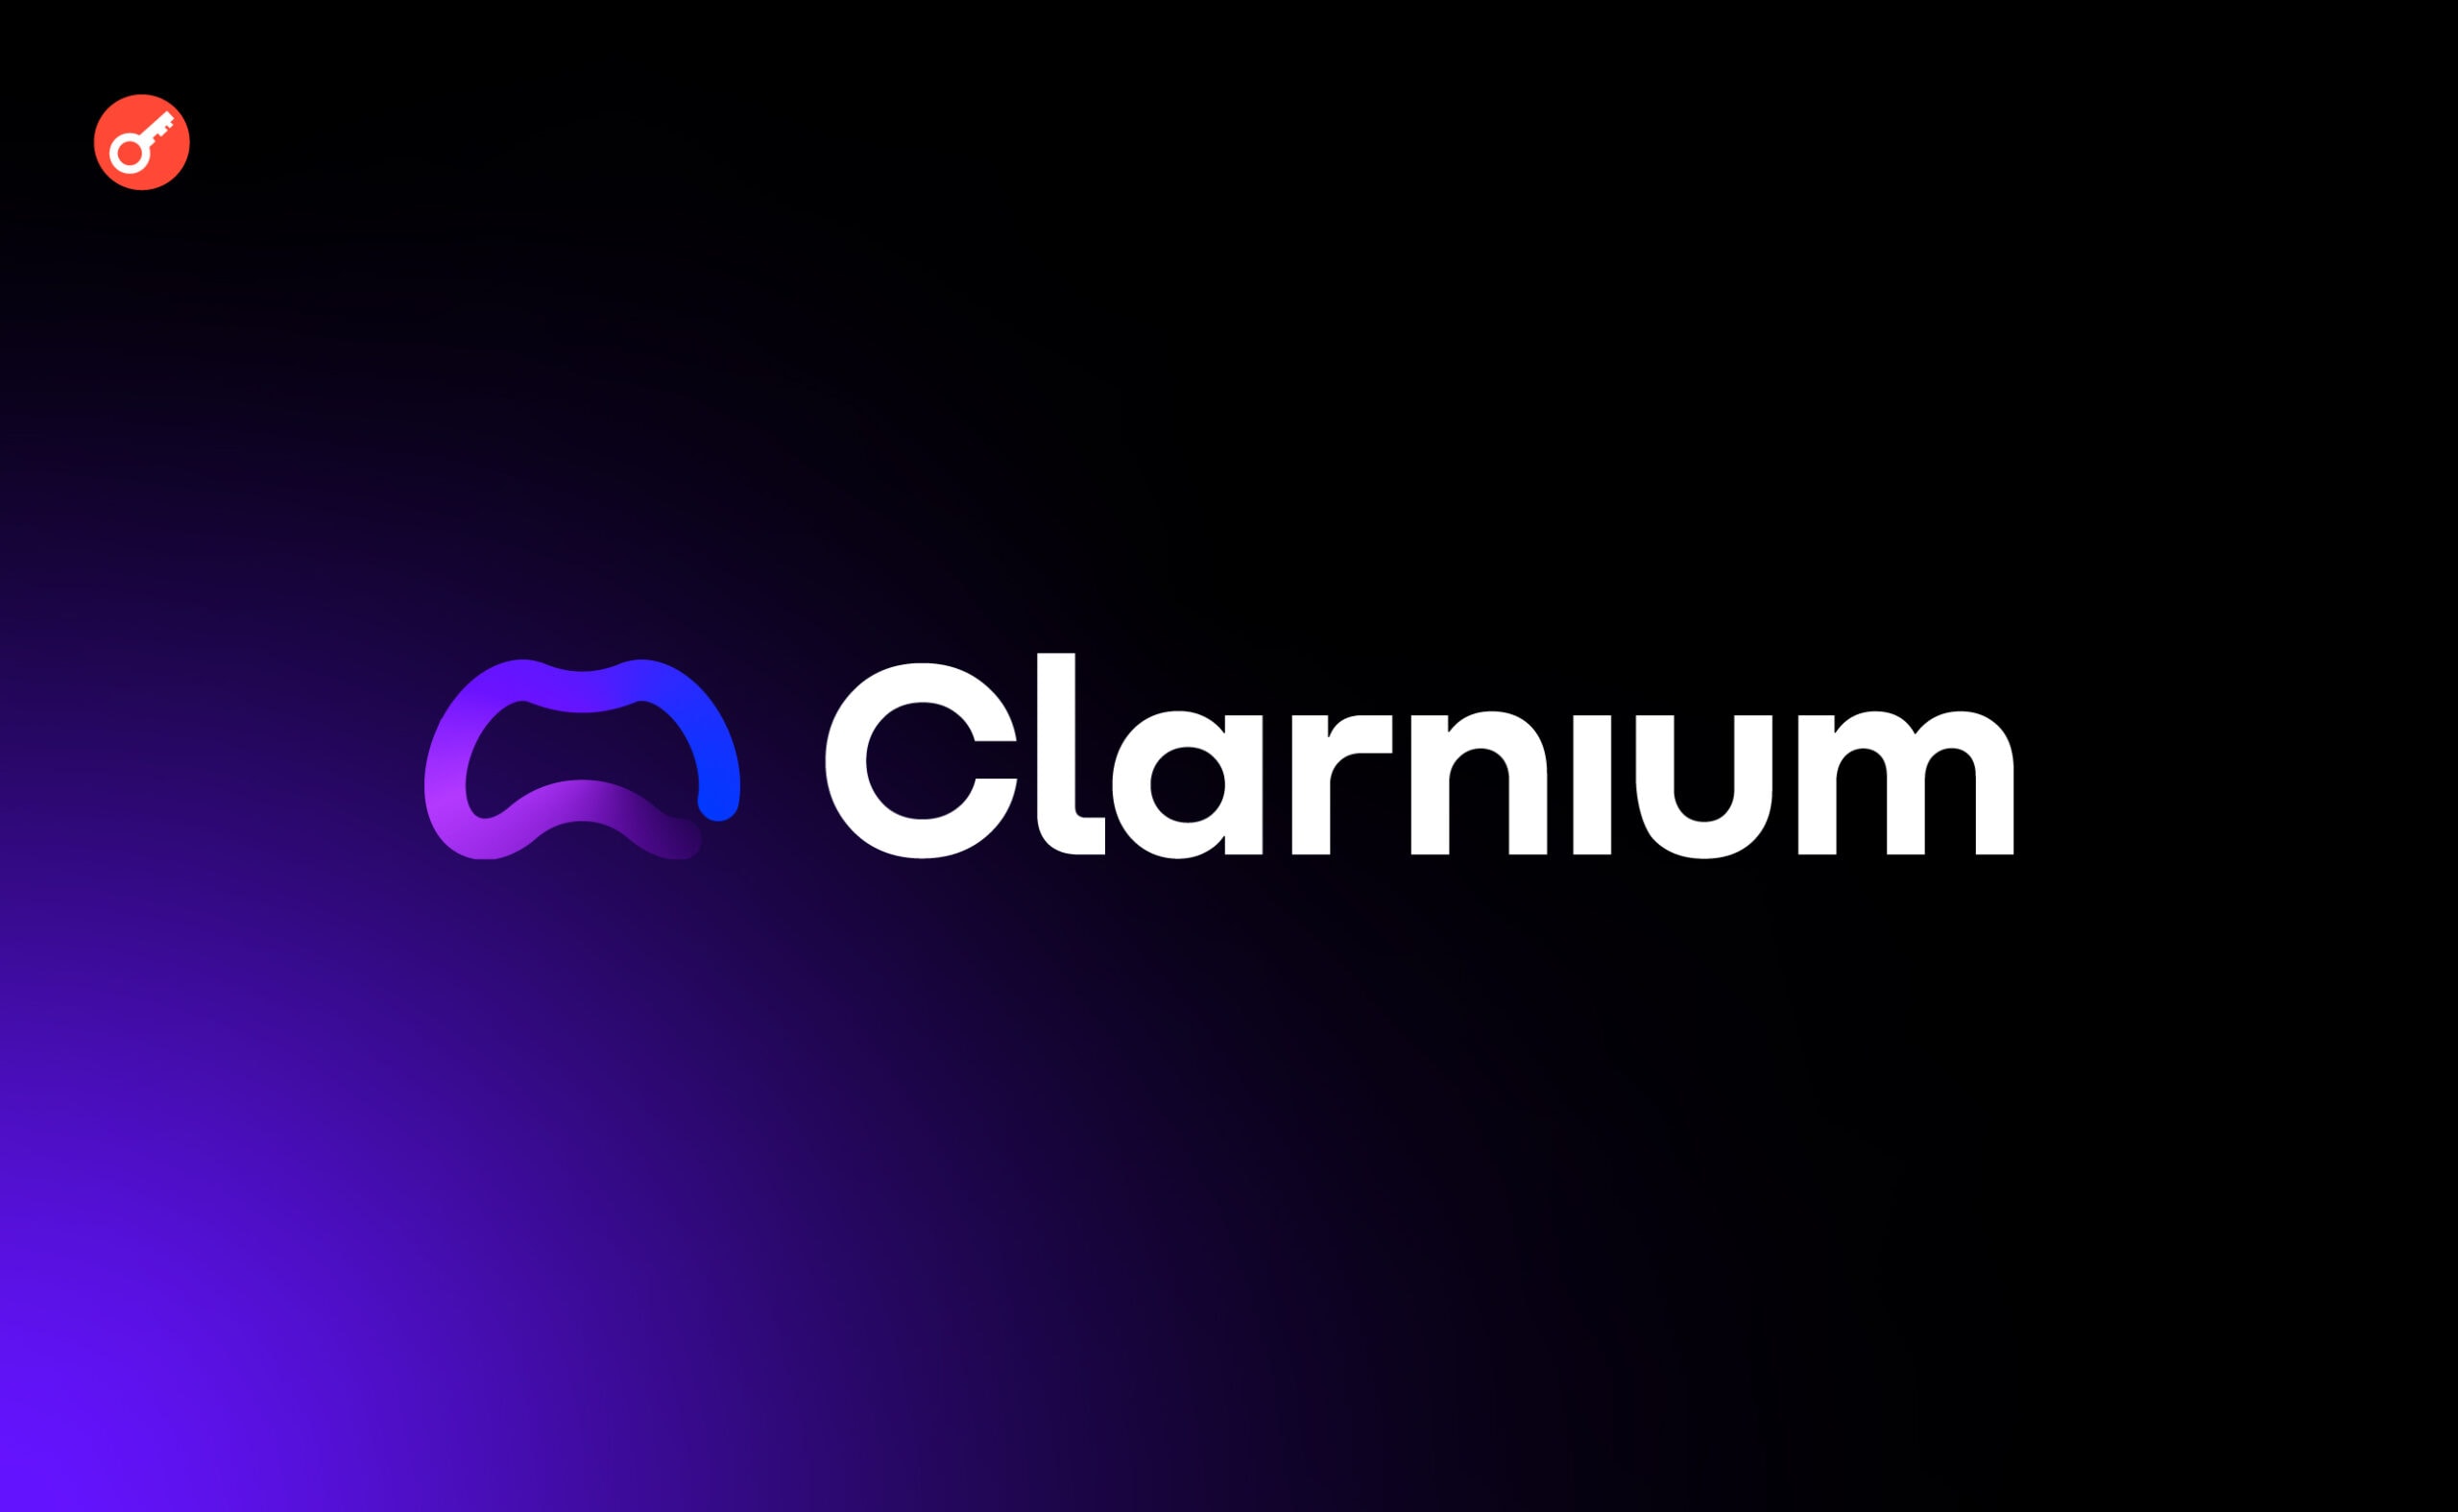 Платформа Clarnium оголосила про запуск агрегатора. Головний колаж новини.